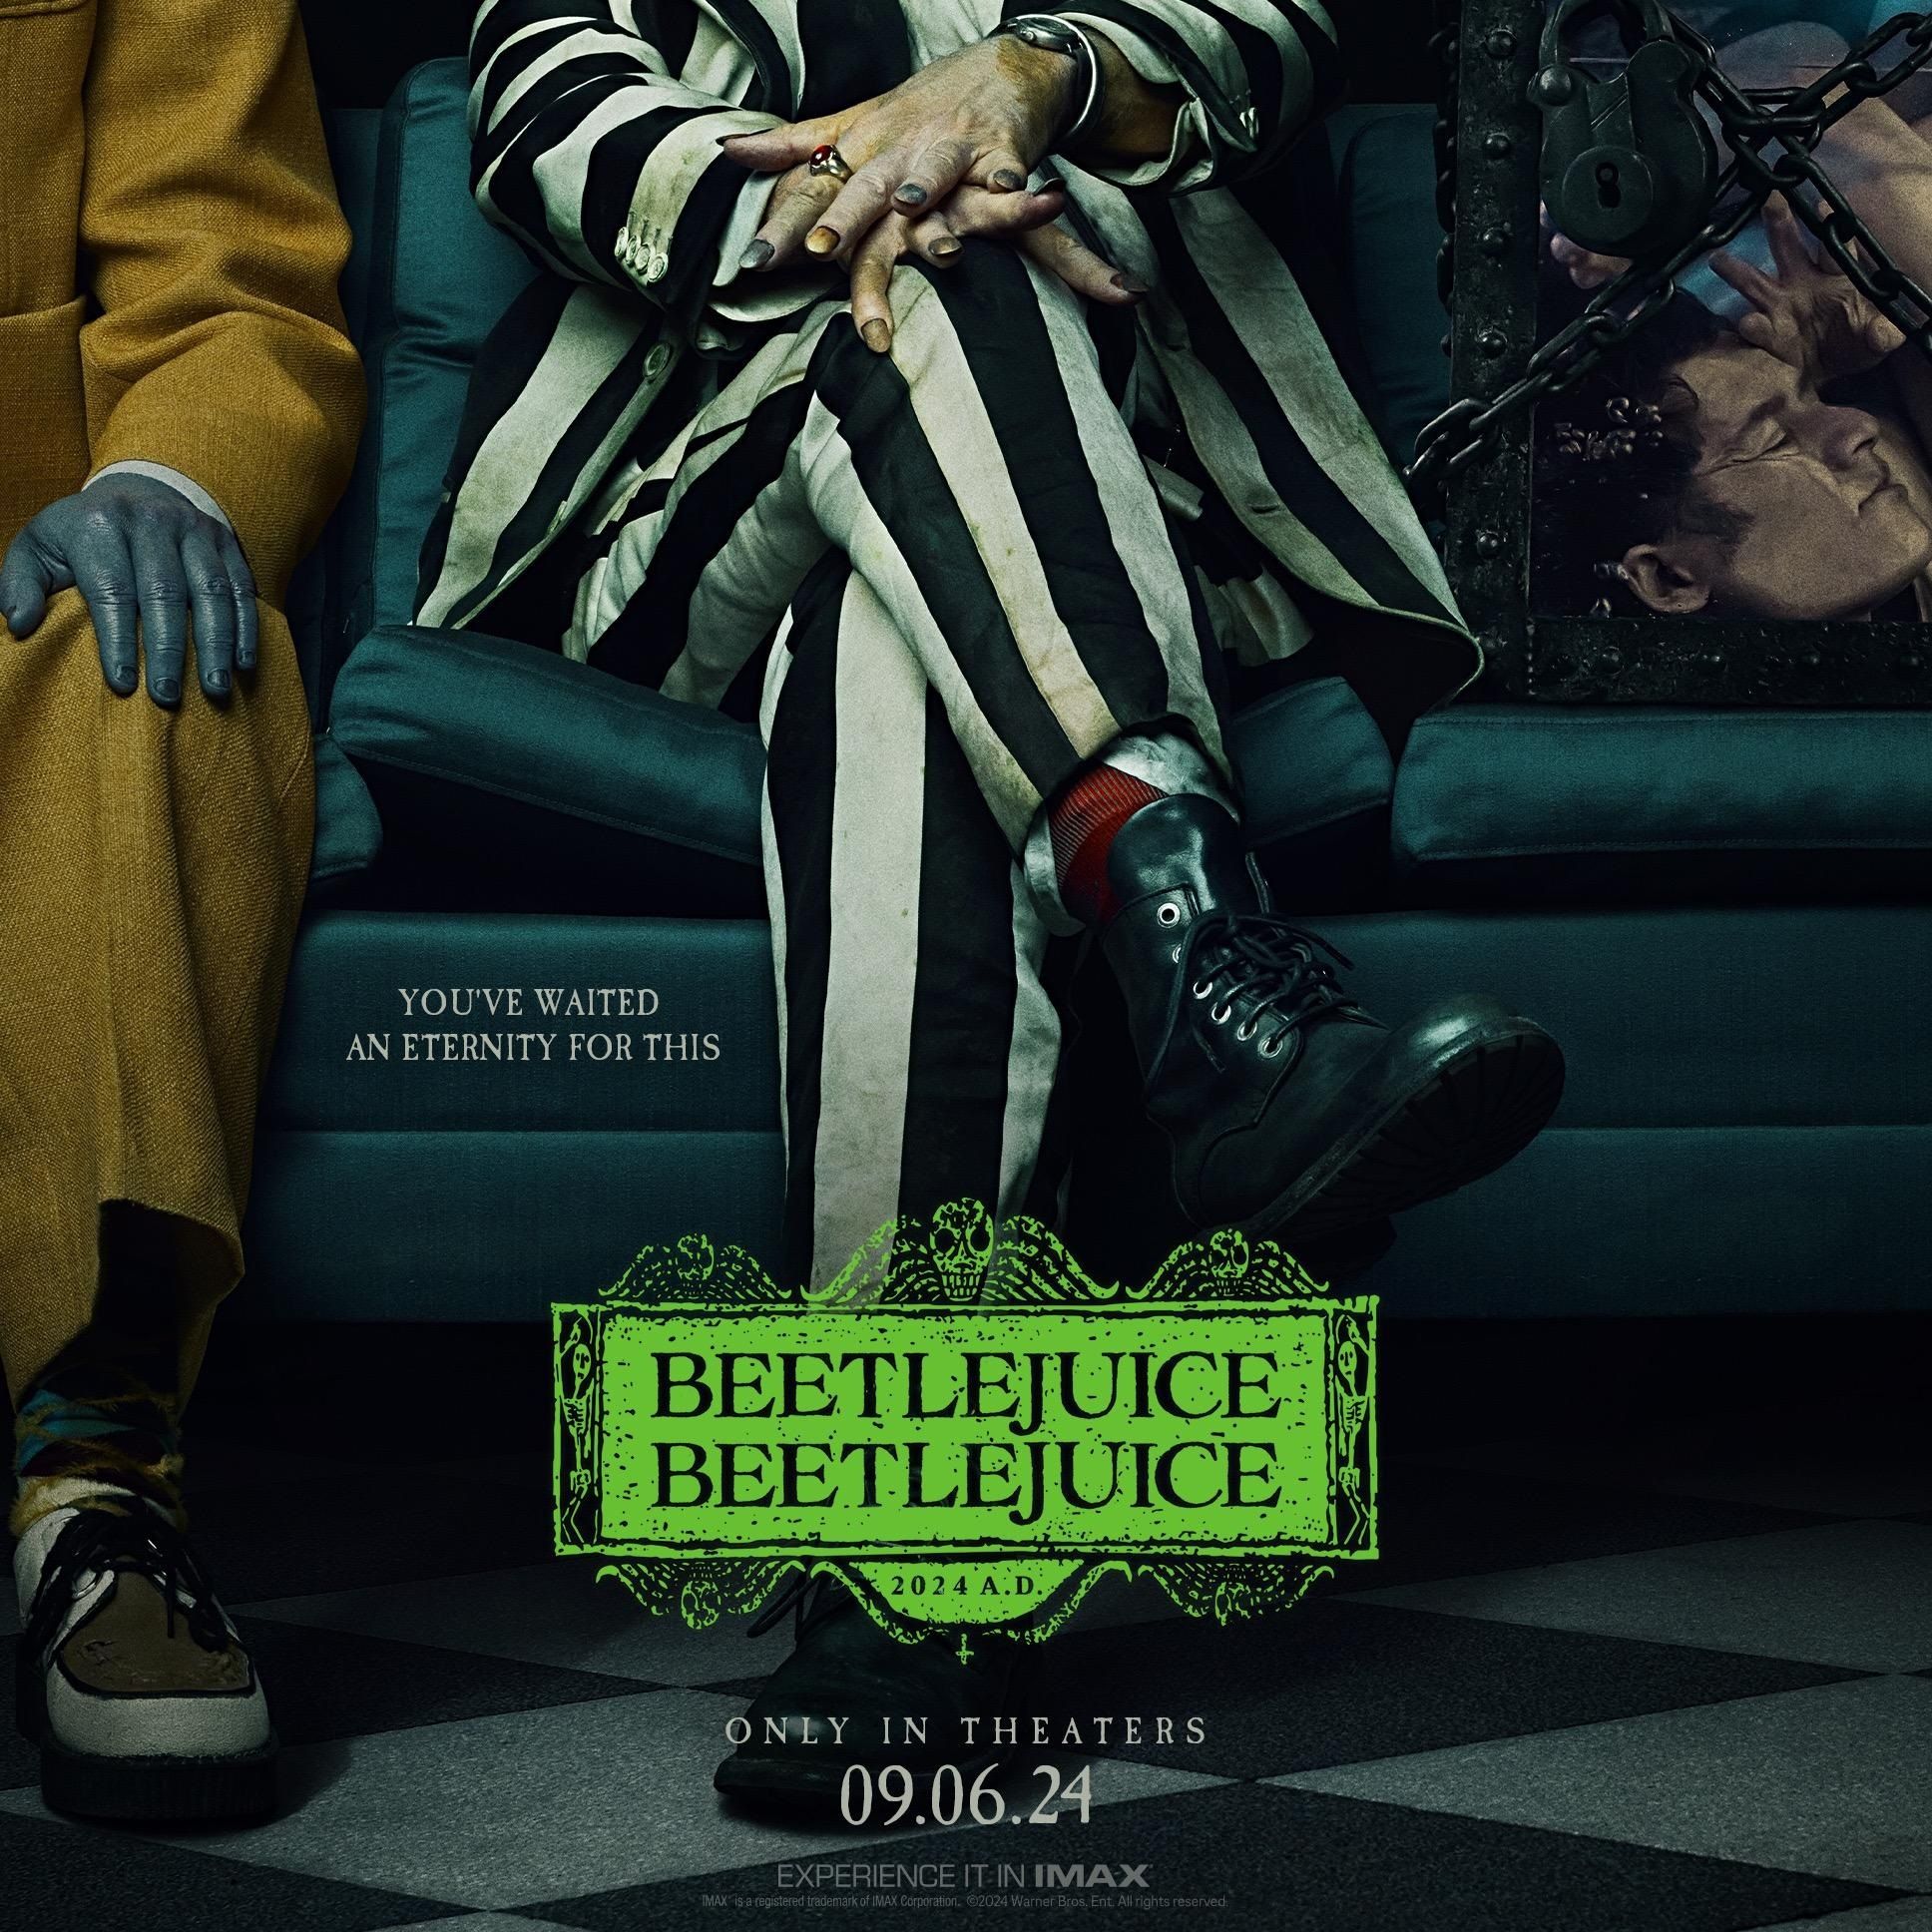 Постер «Битлджус 2» подчеркивает полосатый костюм и странных персонажей